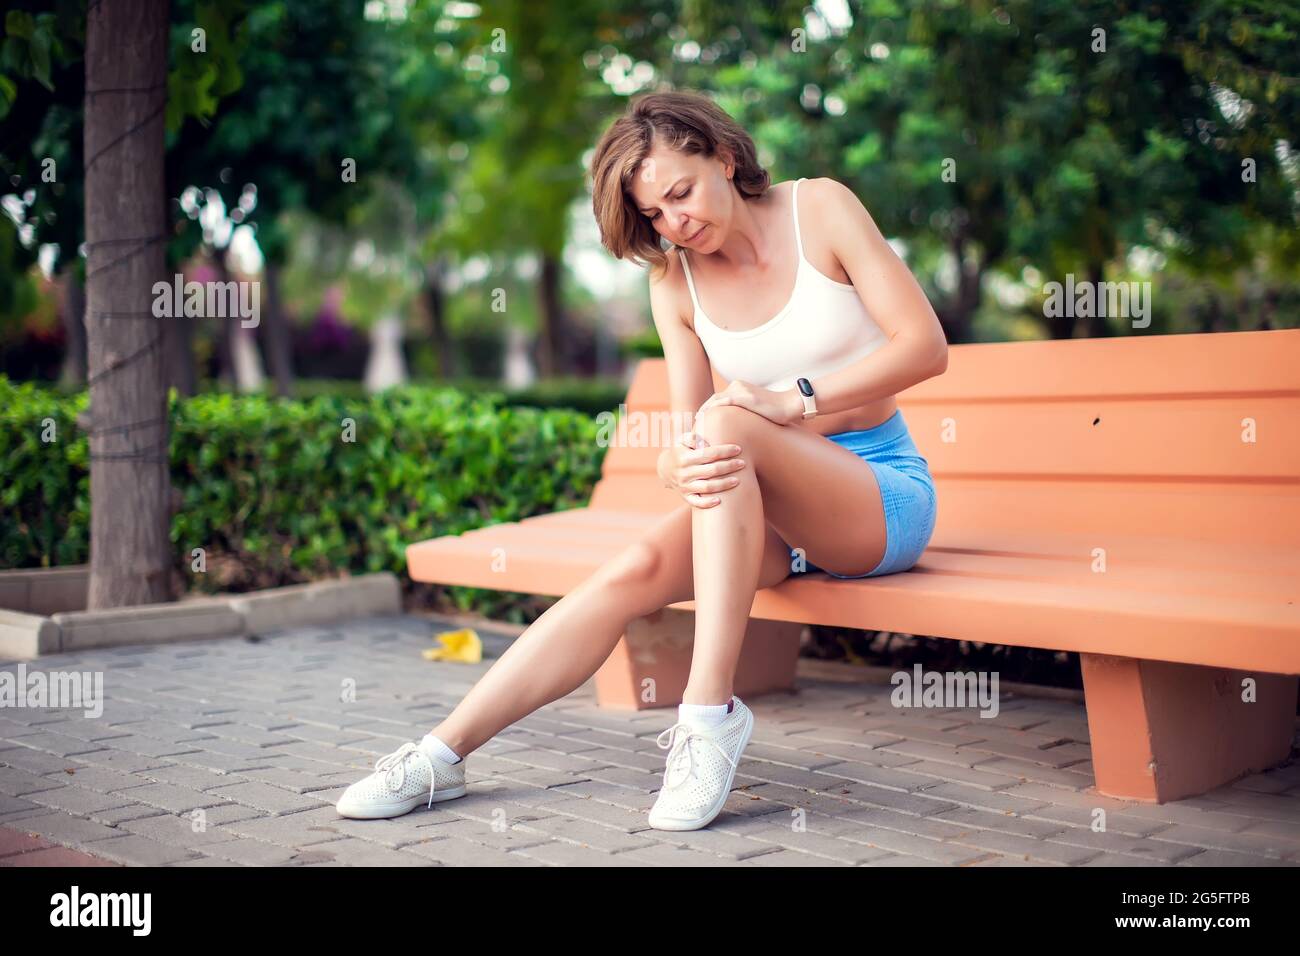 Dolor de rodilla. Mujer con lesión en la rodilla sentada en el banco al aire libre. Concepto de salud y estilo de vida Foto de stock